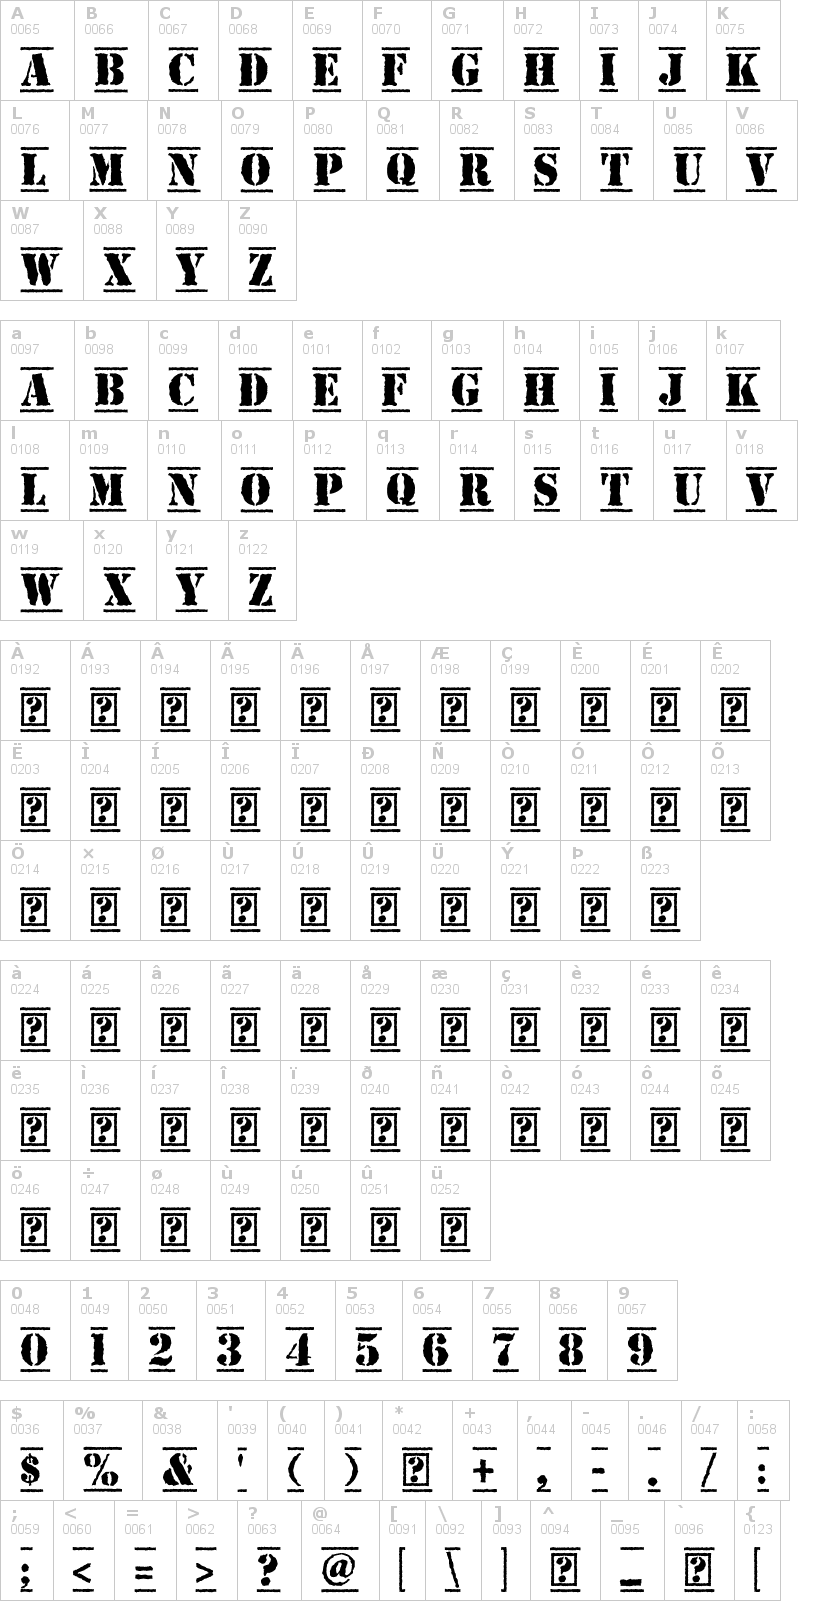 Lettere dell'alfabeto del font top-secret-kb con le quali è possibile realizzare adesivi prespaziati